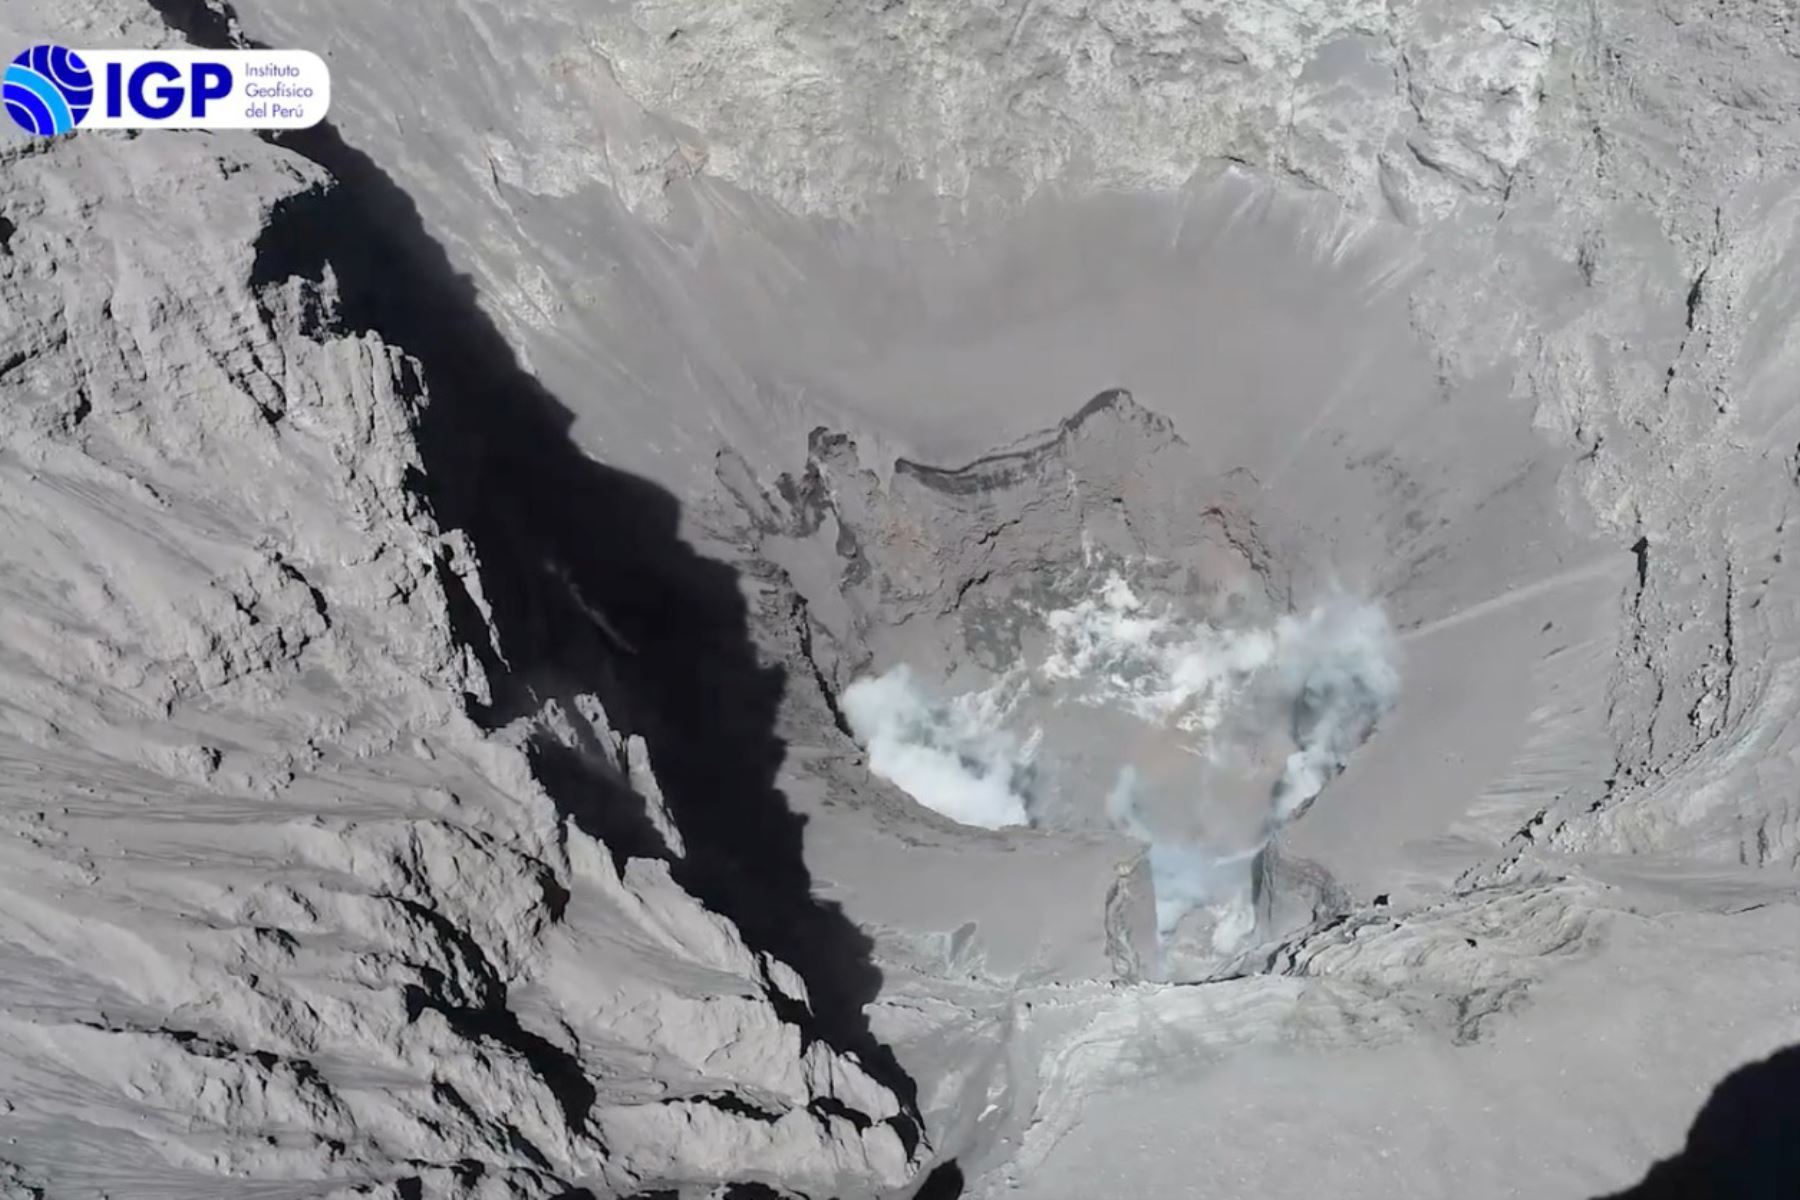 Dron del IGP sobrevuela el volcán Ubinas y obtiene imágenes inéditas de su cráter. Foto: ANDINA/Archivo